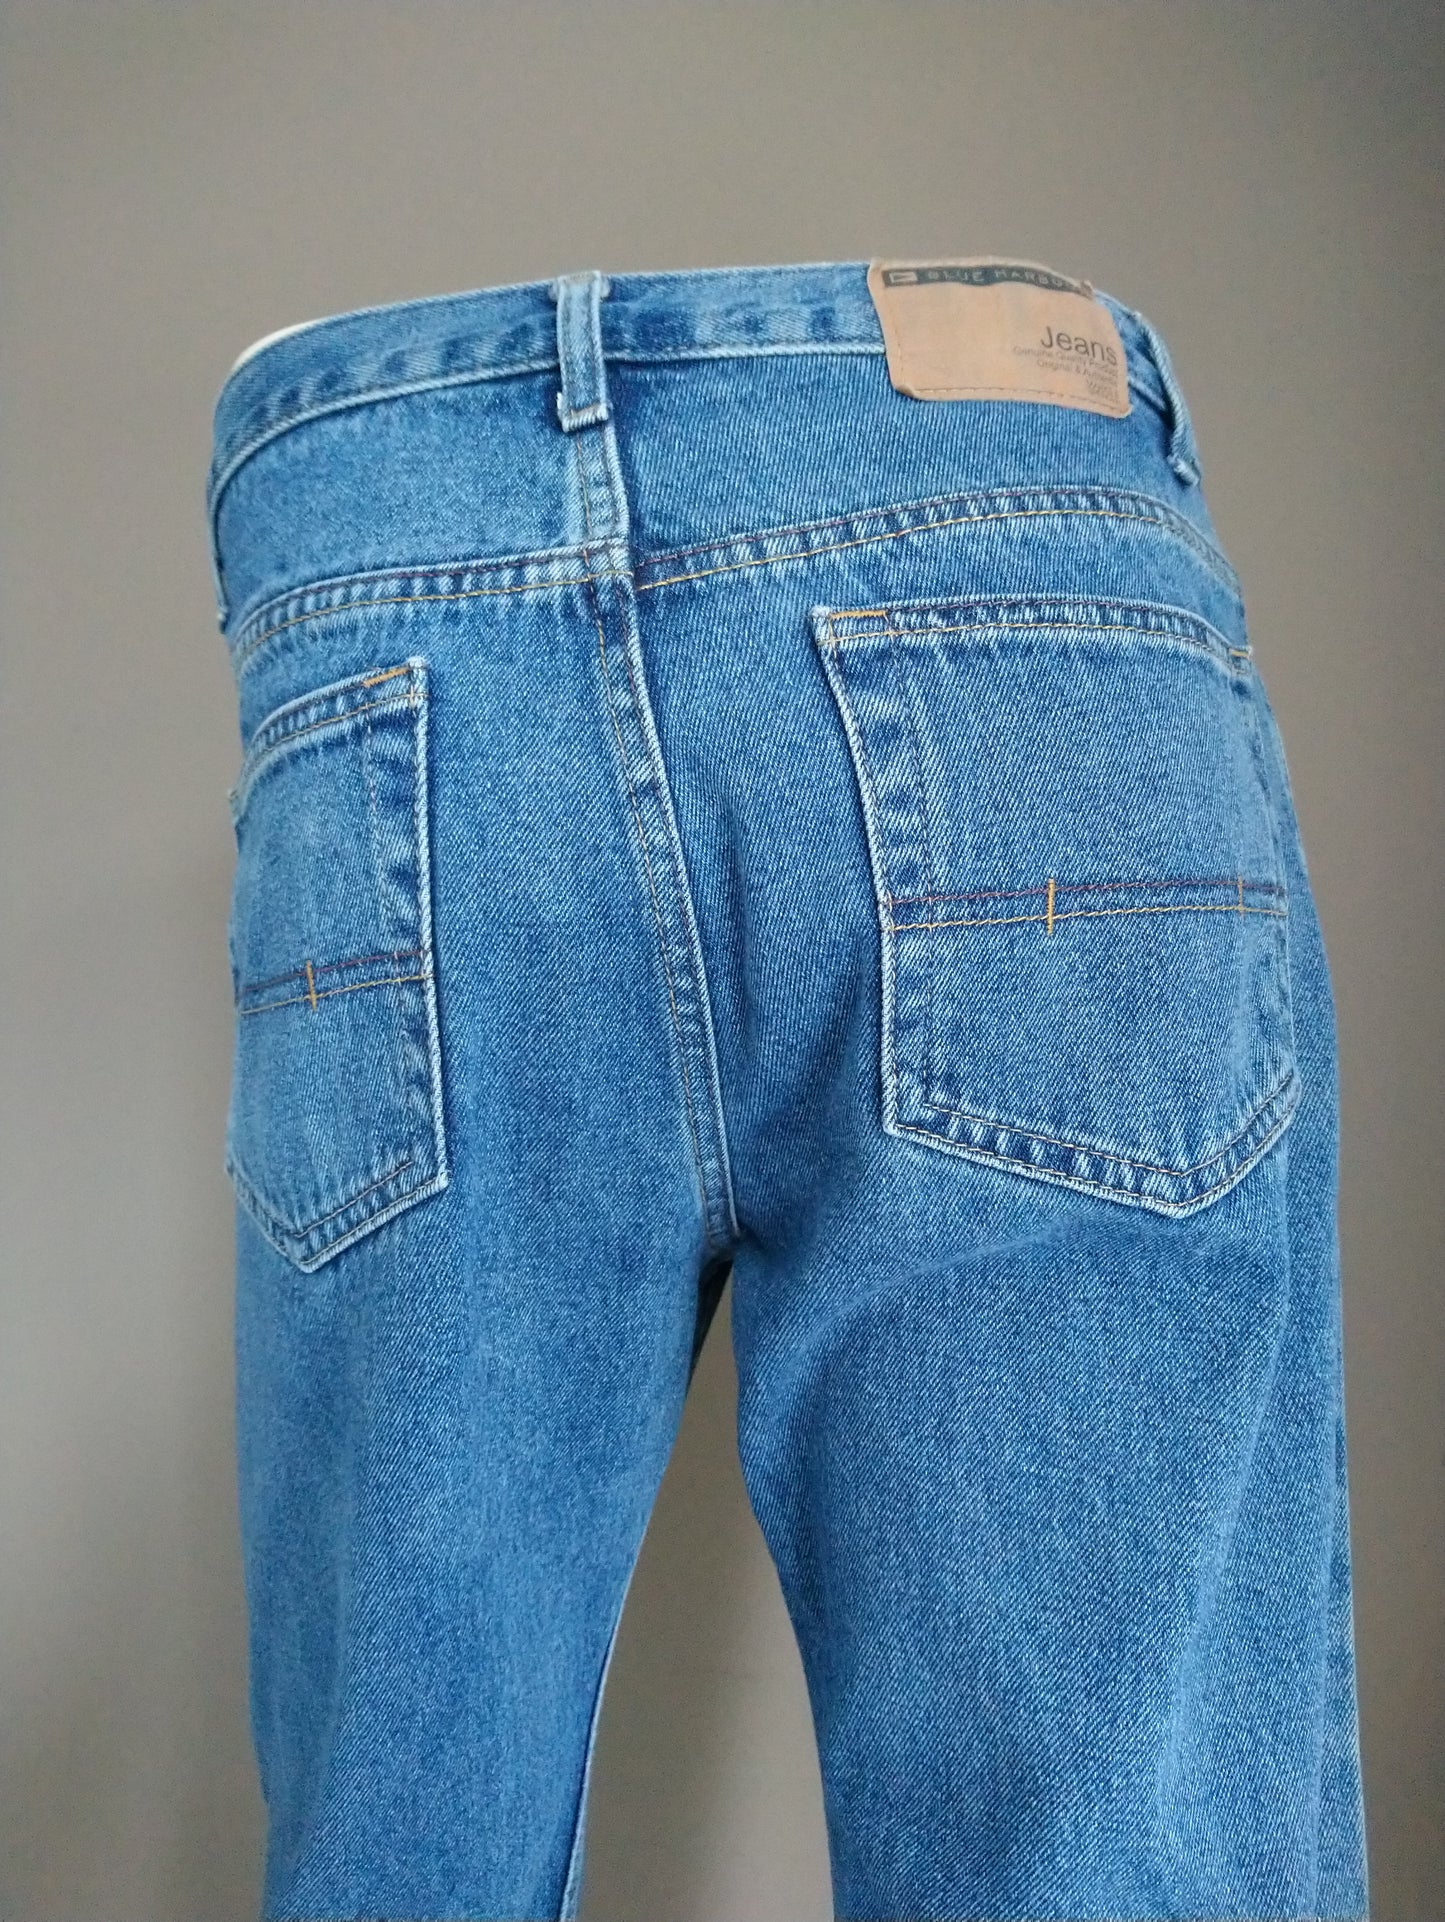 Blue Harbor Jeans. Blau gefärbt. Größe W32 - L30.